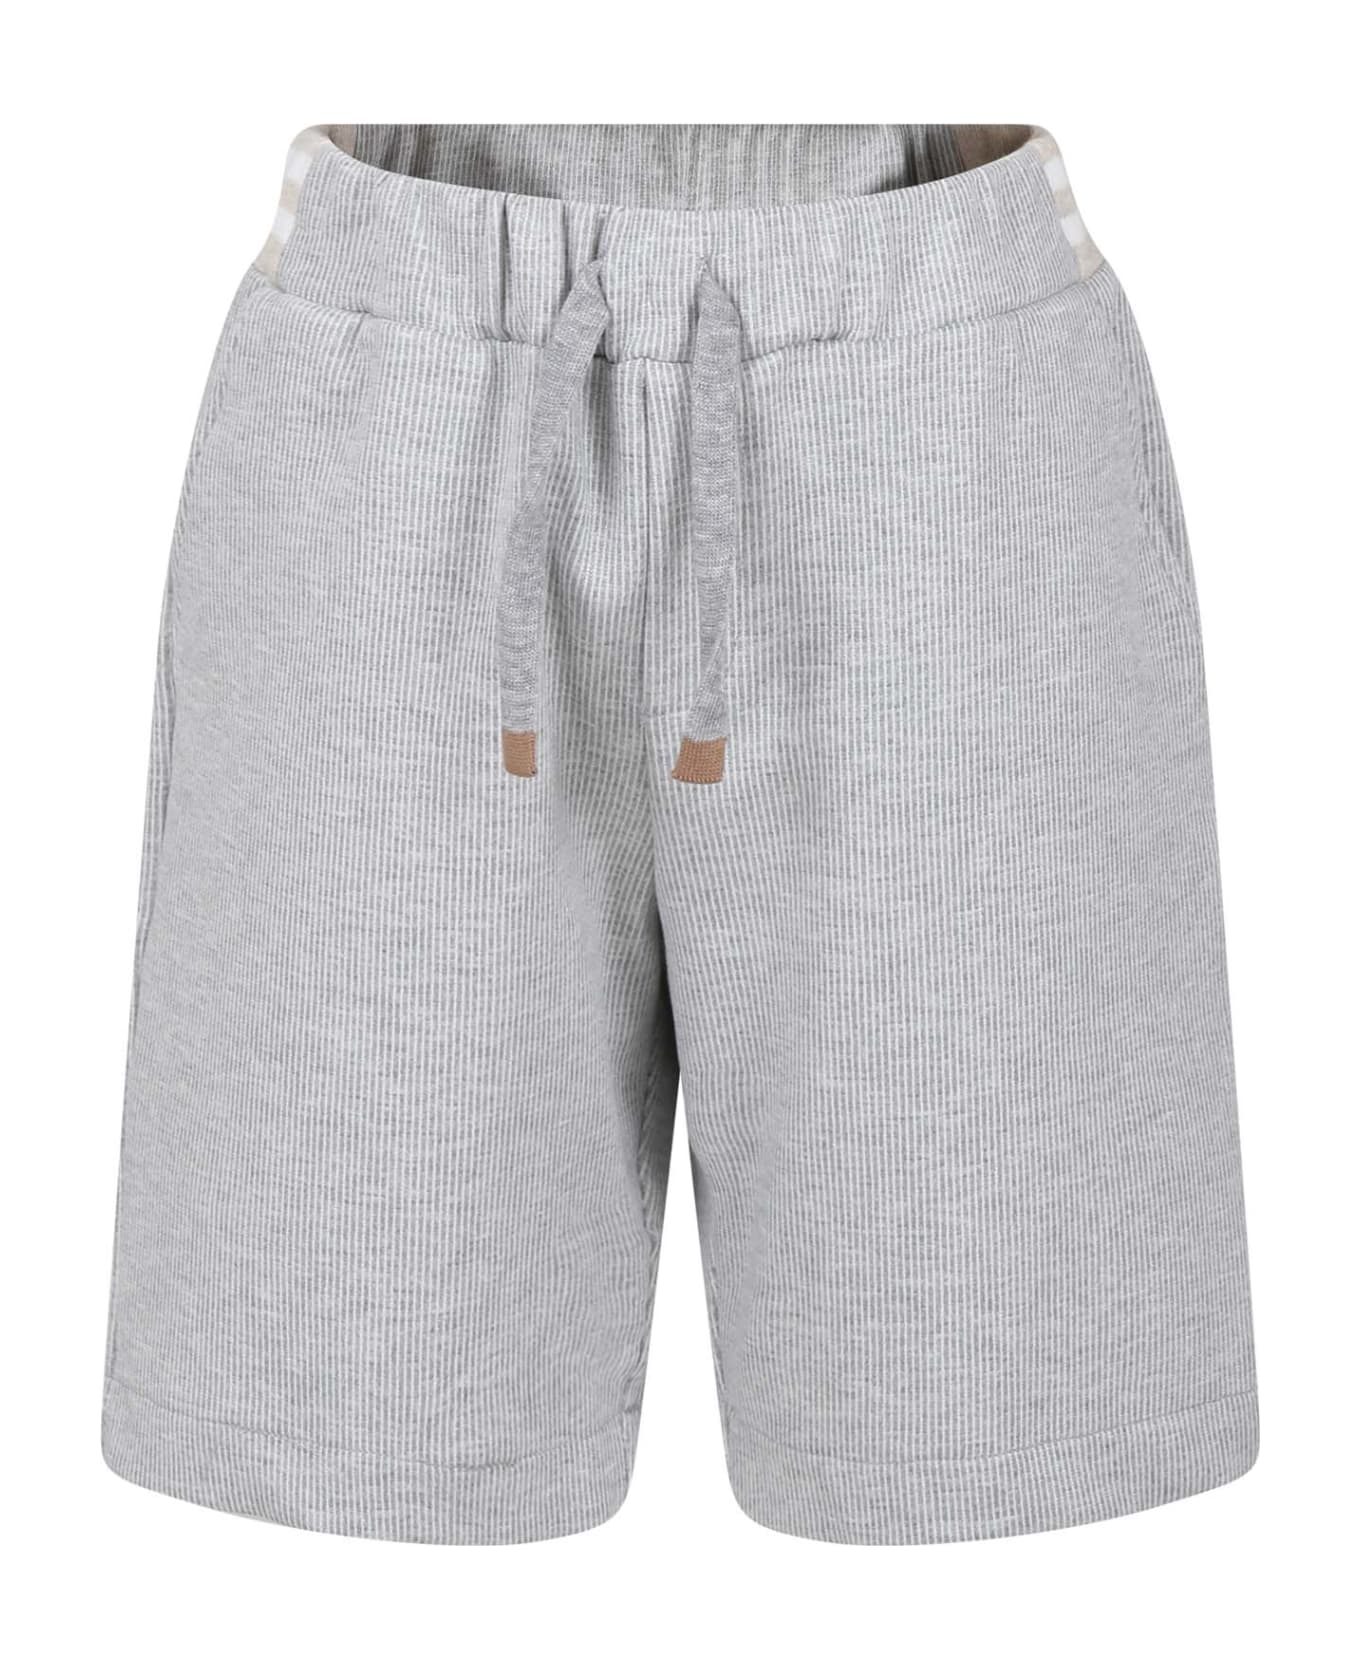 Eleventy Grey Shorts For Boy With Logo - Grey